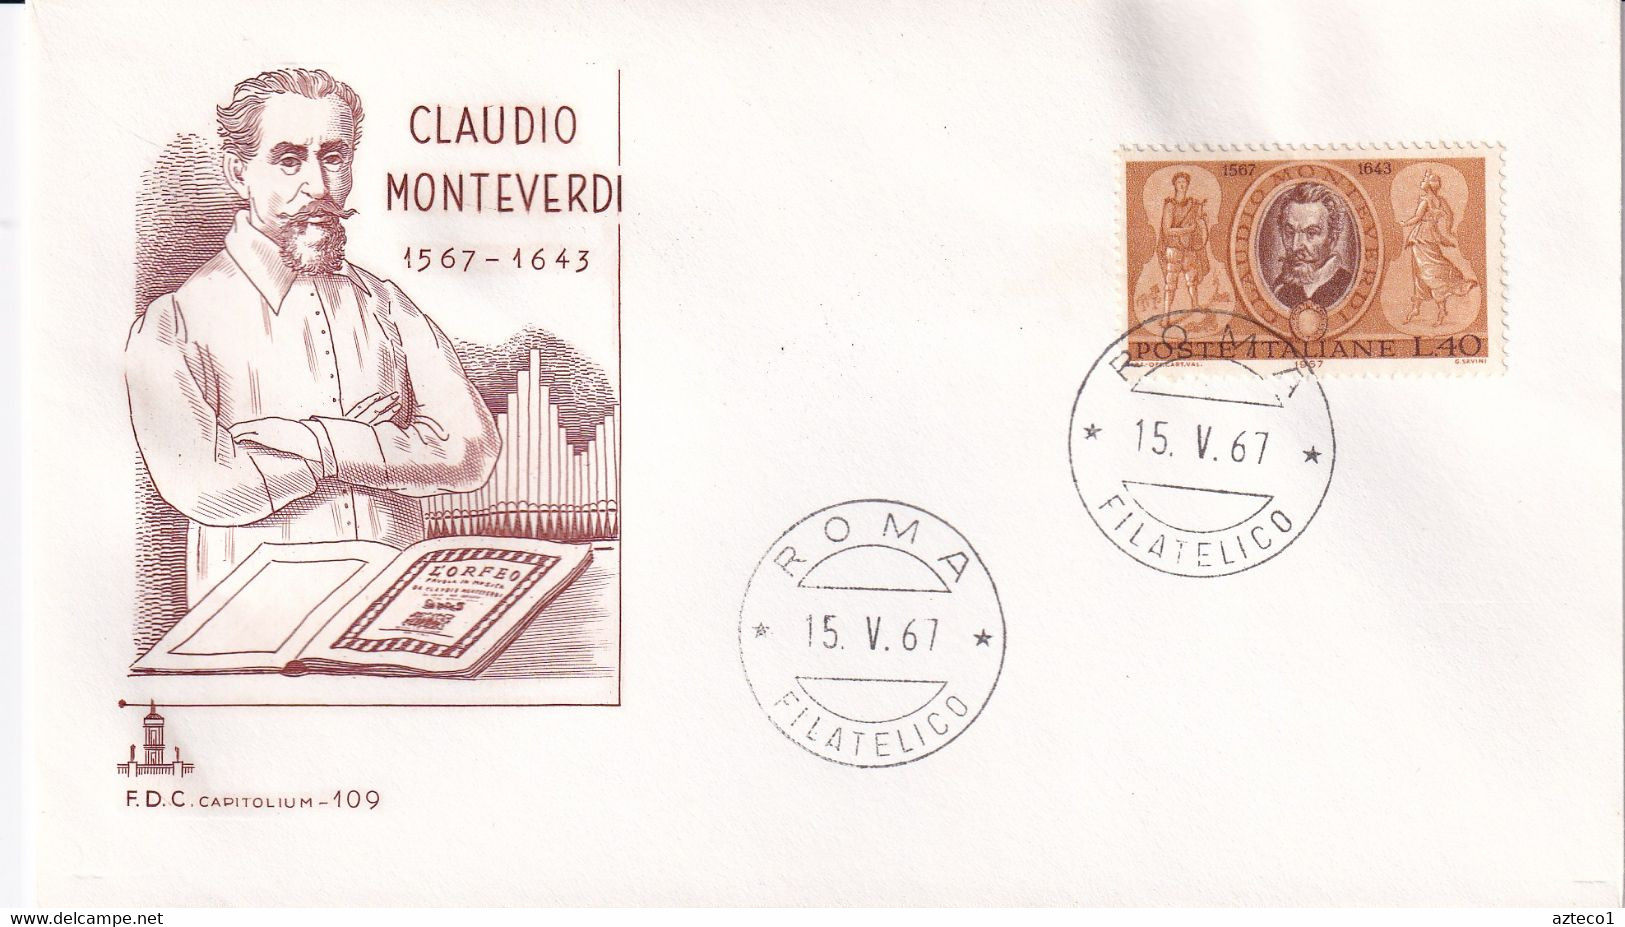 ITALIA - FDC CAPITOLIUM BRUNA 1967 - CLAUDIO MONTEVERDI - MUSICA - F.D.C.